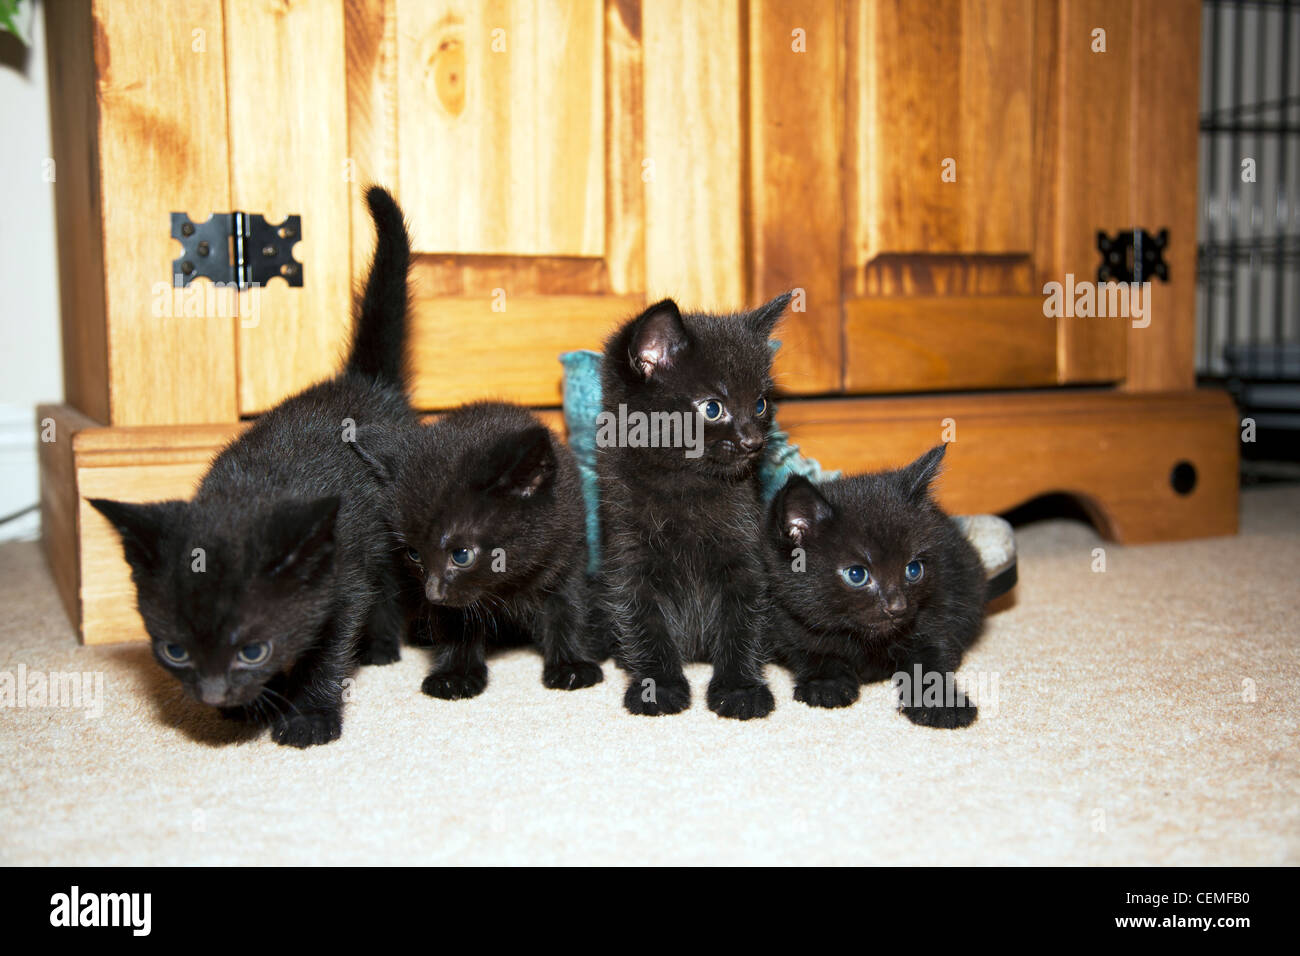 cuatro-neցros-gatitos-afortunado-para-algunos-jugando-como-lo-hacen-los-gatos-cemfb0.jpg